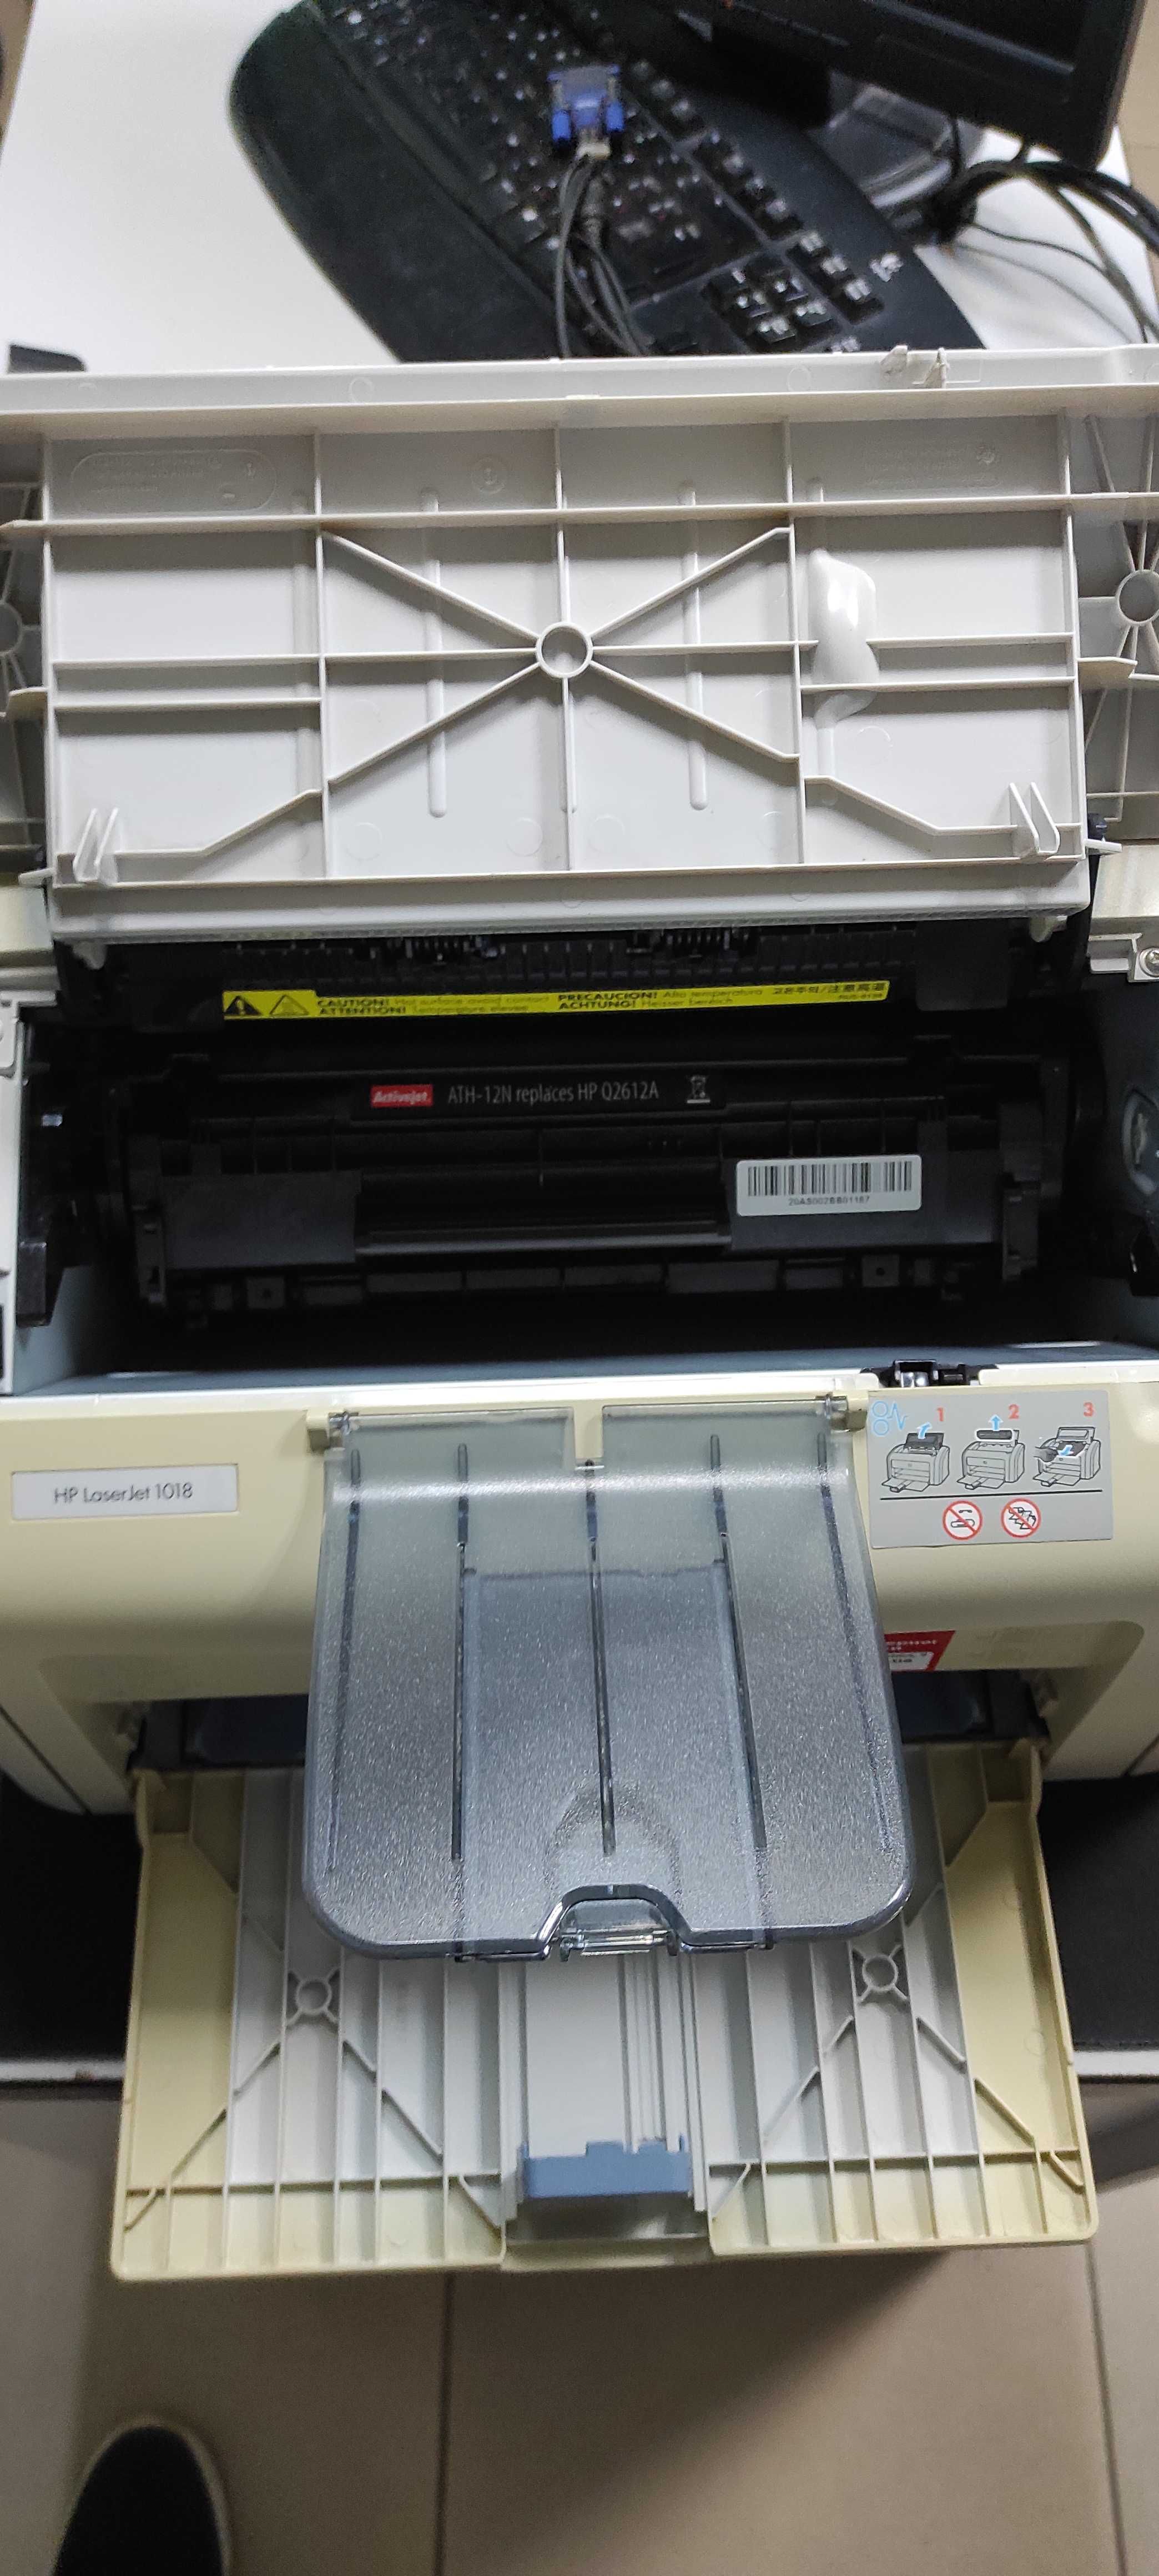 Лазерний принтер HP LJ 1020/1022 з картриджем, лотками і кабелями !